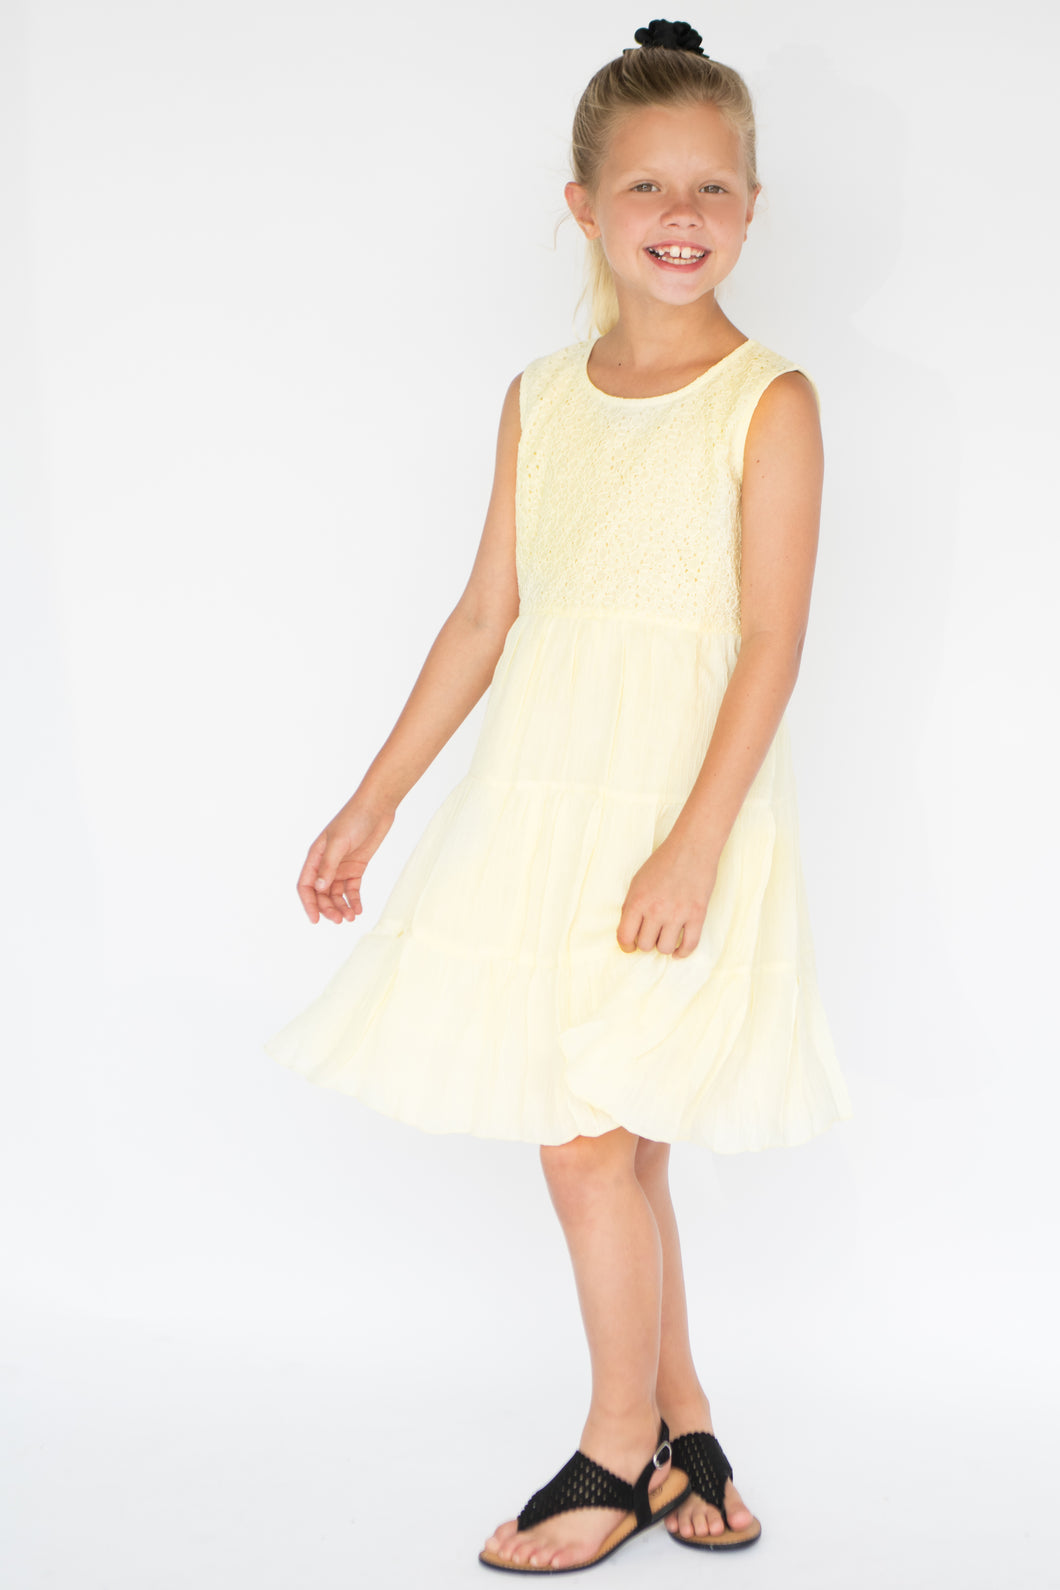 Pastel Yellow Net Detail Dress - Kids Wholesale Boutique Clothing, Dress - Girls Dresses, Yo Baby Wholesale - Yo Baby